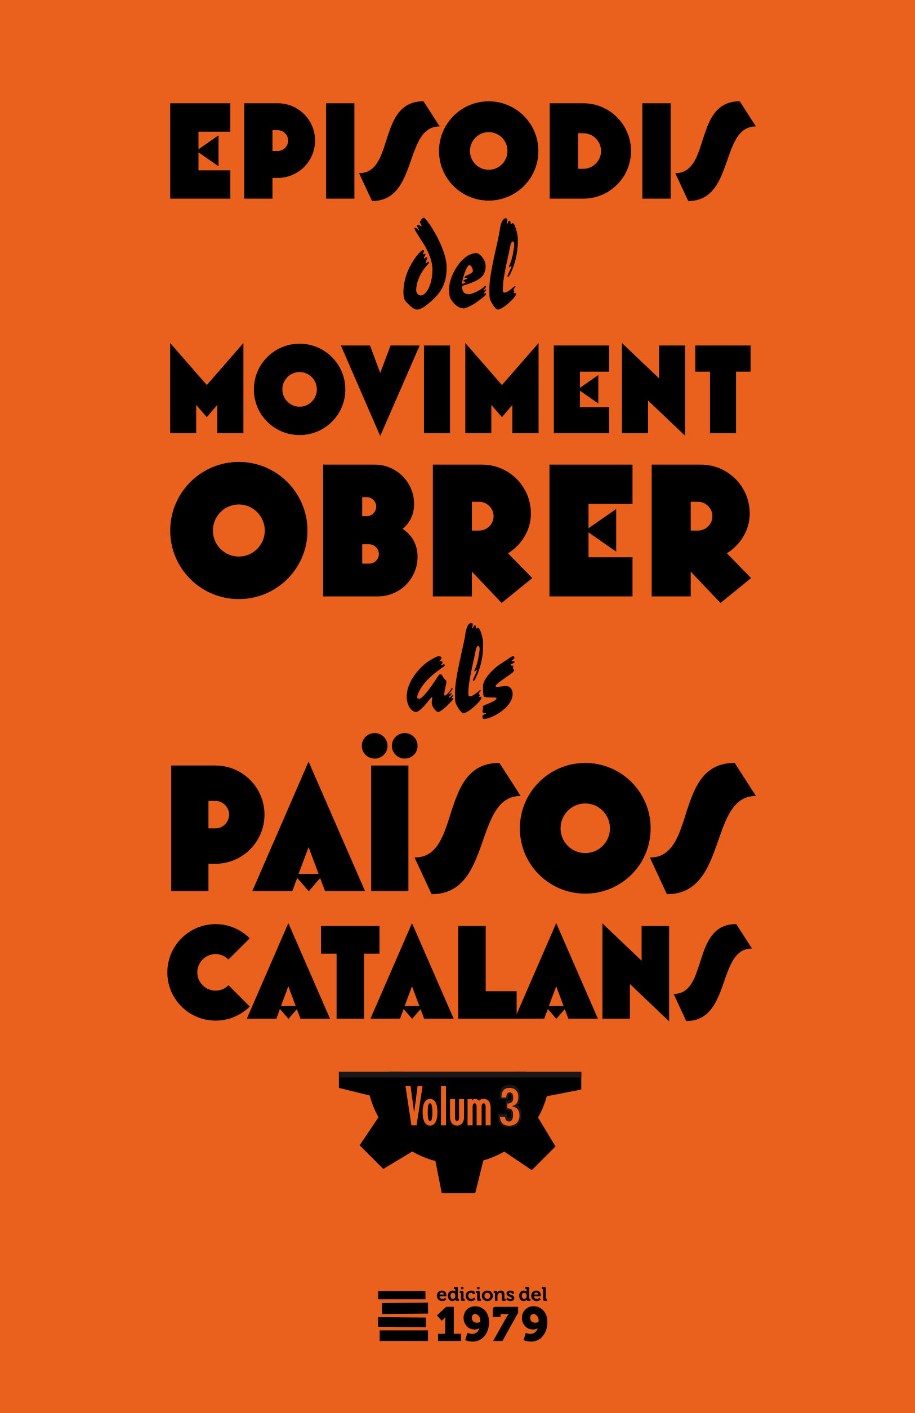 Episodis del moviment obrer als Països Catalans (Volum 3) - VVAA